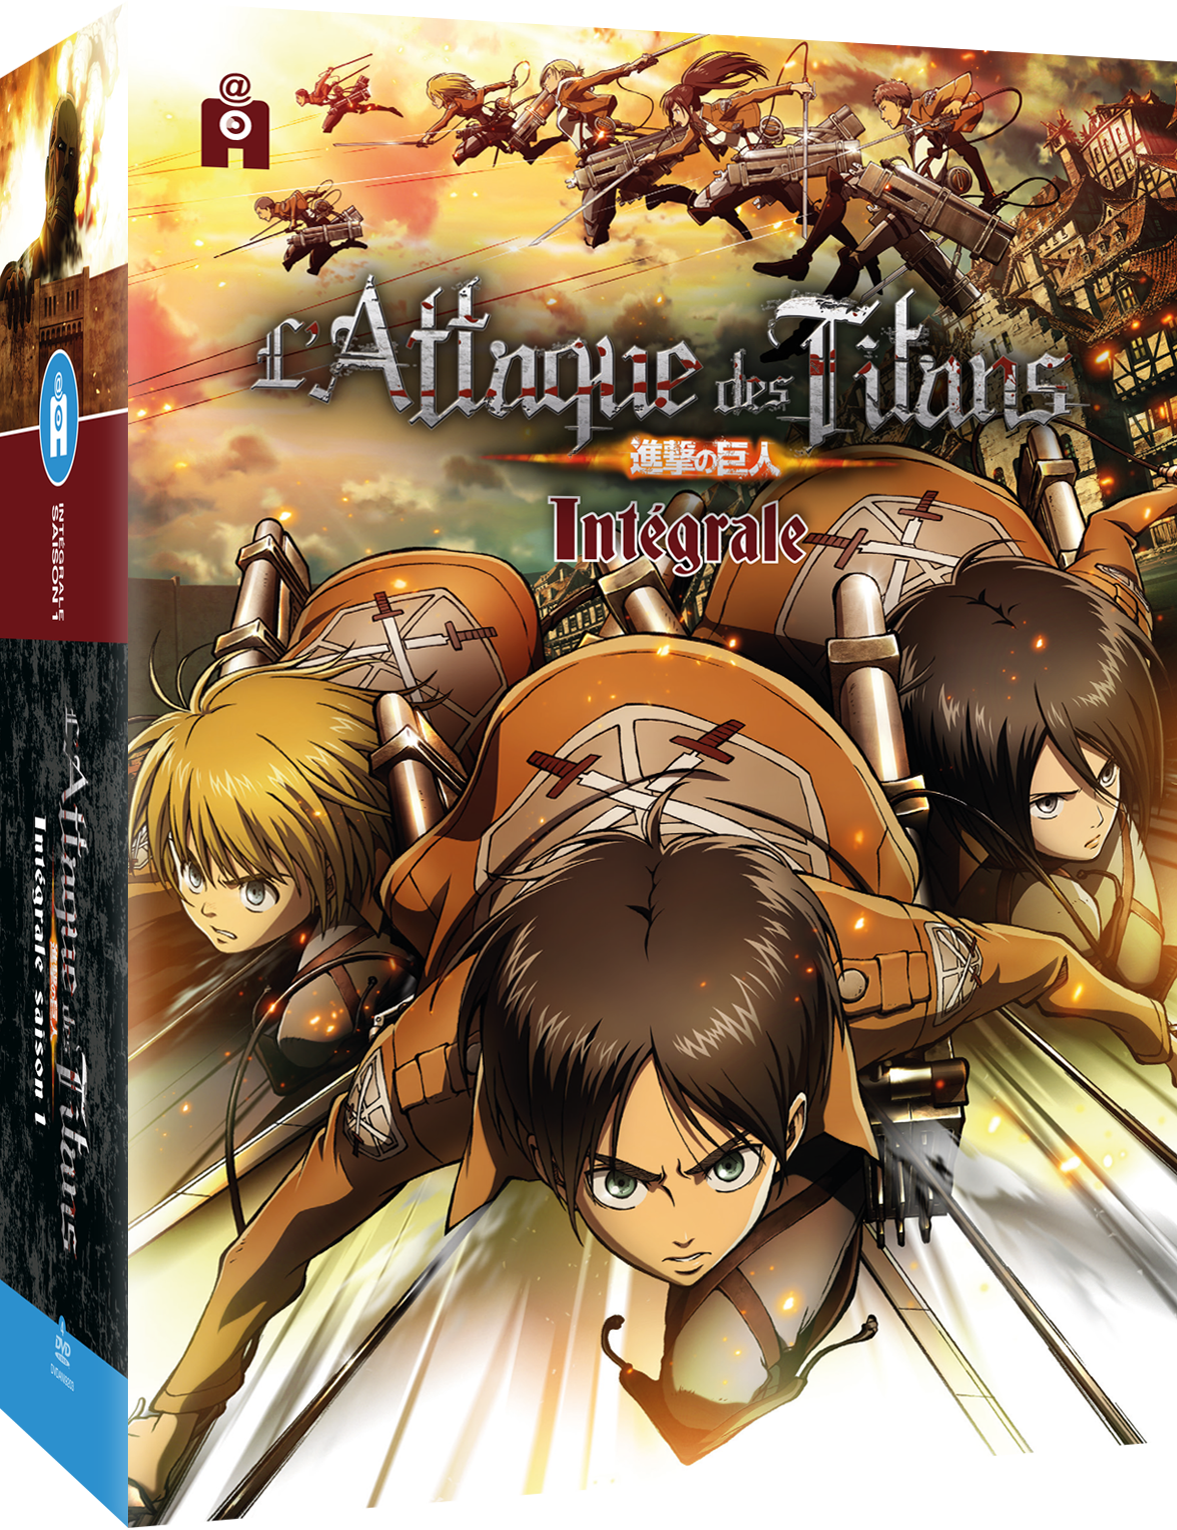 L'ATTAQUE DES TITANS - Intégrale Saison 1 - Edition DVD